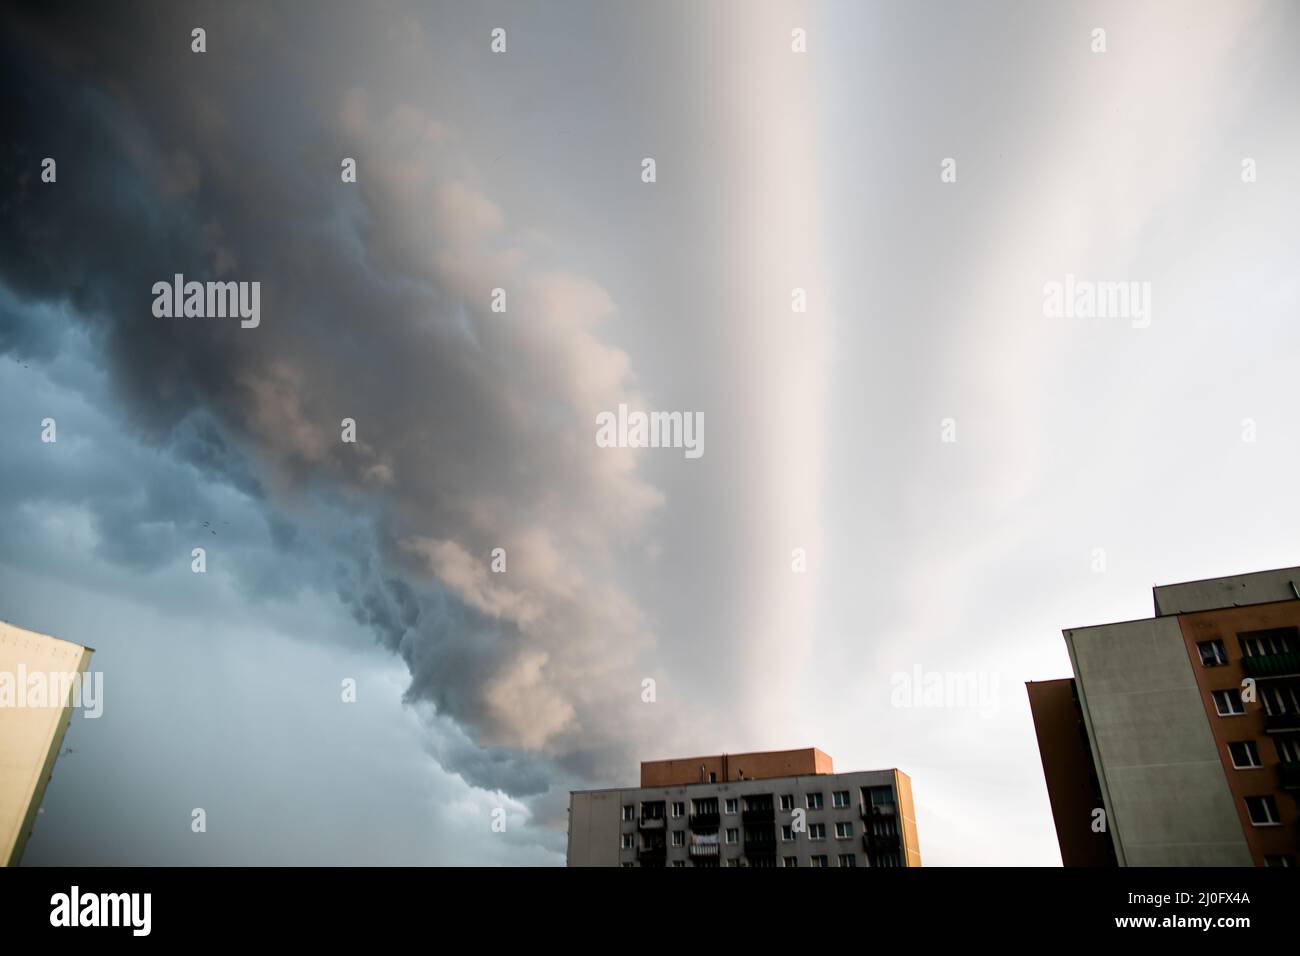 Sturmwolken über der Stadt Lublin. Der Himmel wird von wirbelnden Wolken durch einen starken Wind verdeckt. Stockfoto